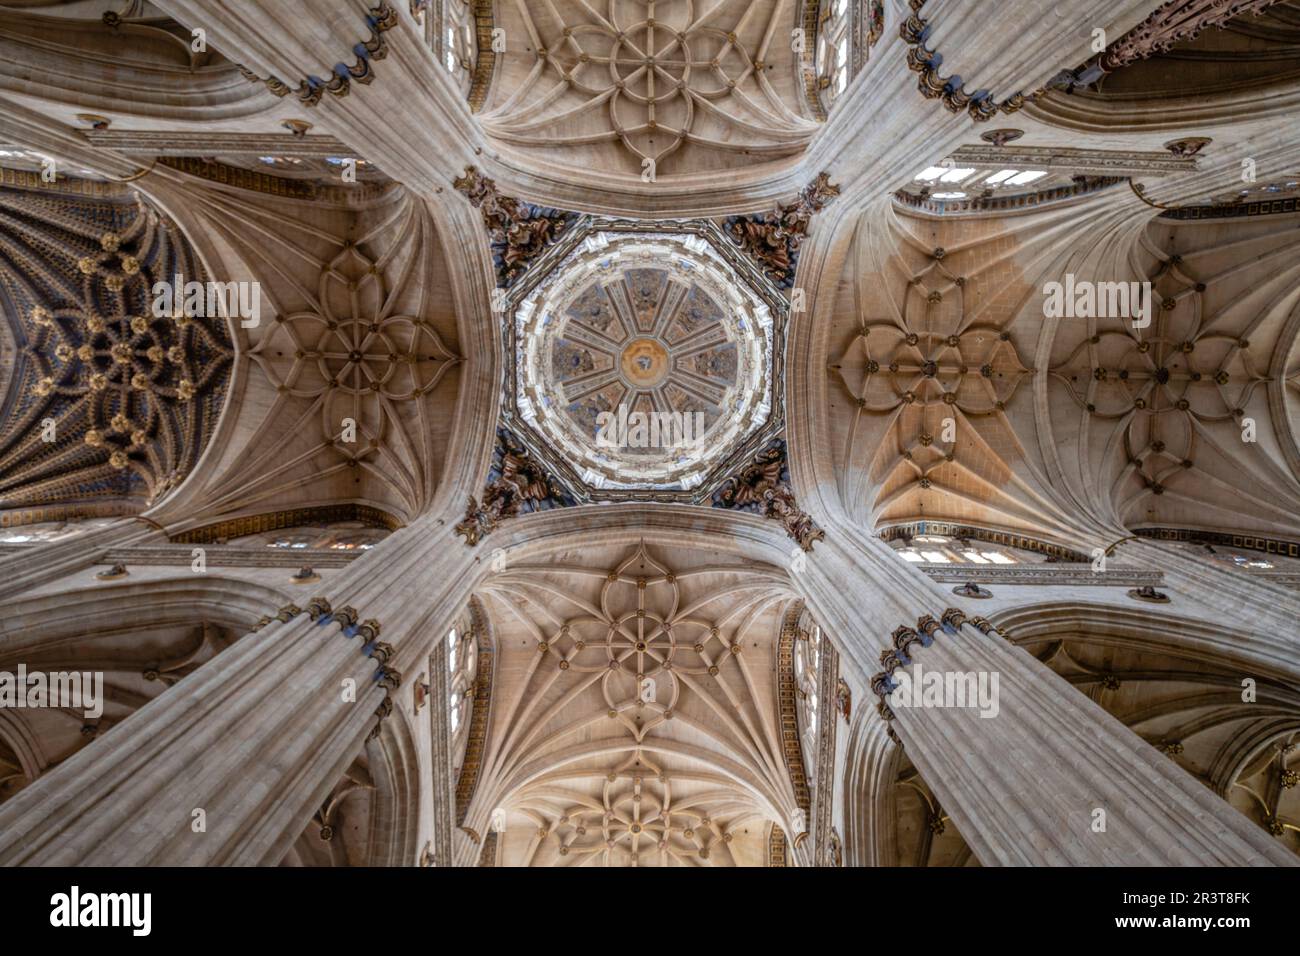 Crucero de la catedral, Catedral de la Asunción de la Virgen, Salamanca, comunidad autónoma de Castilla y León, Spain. Stock Photo